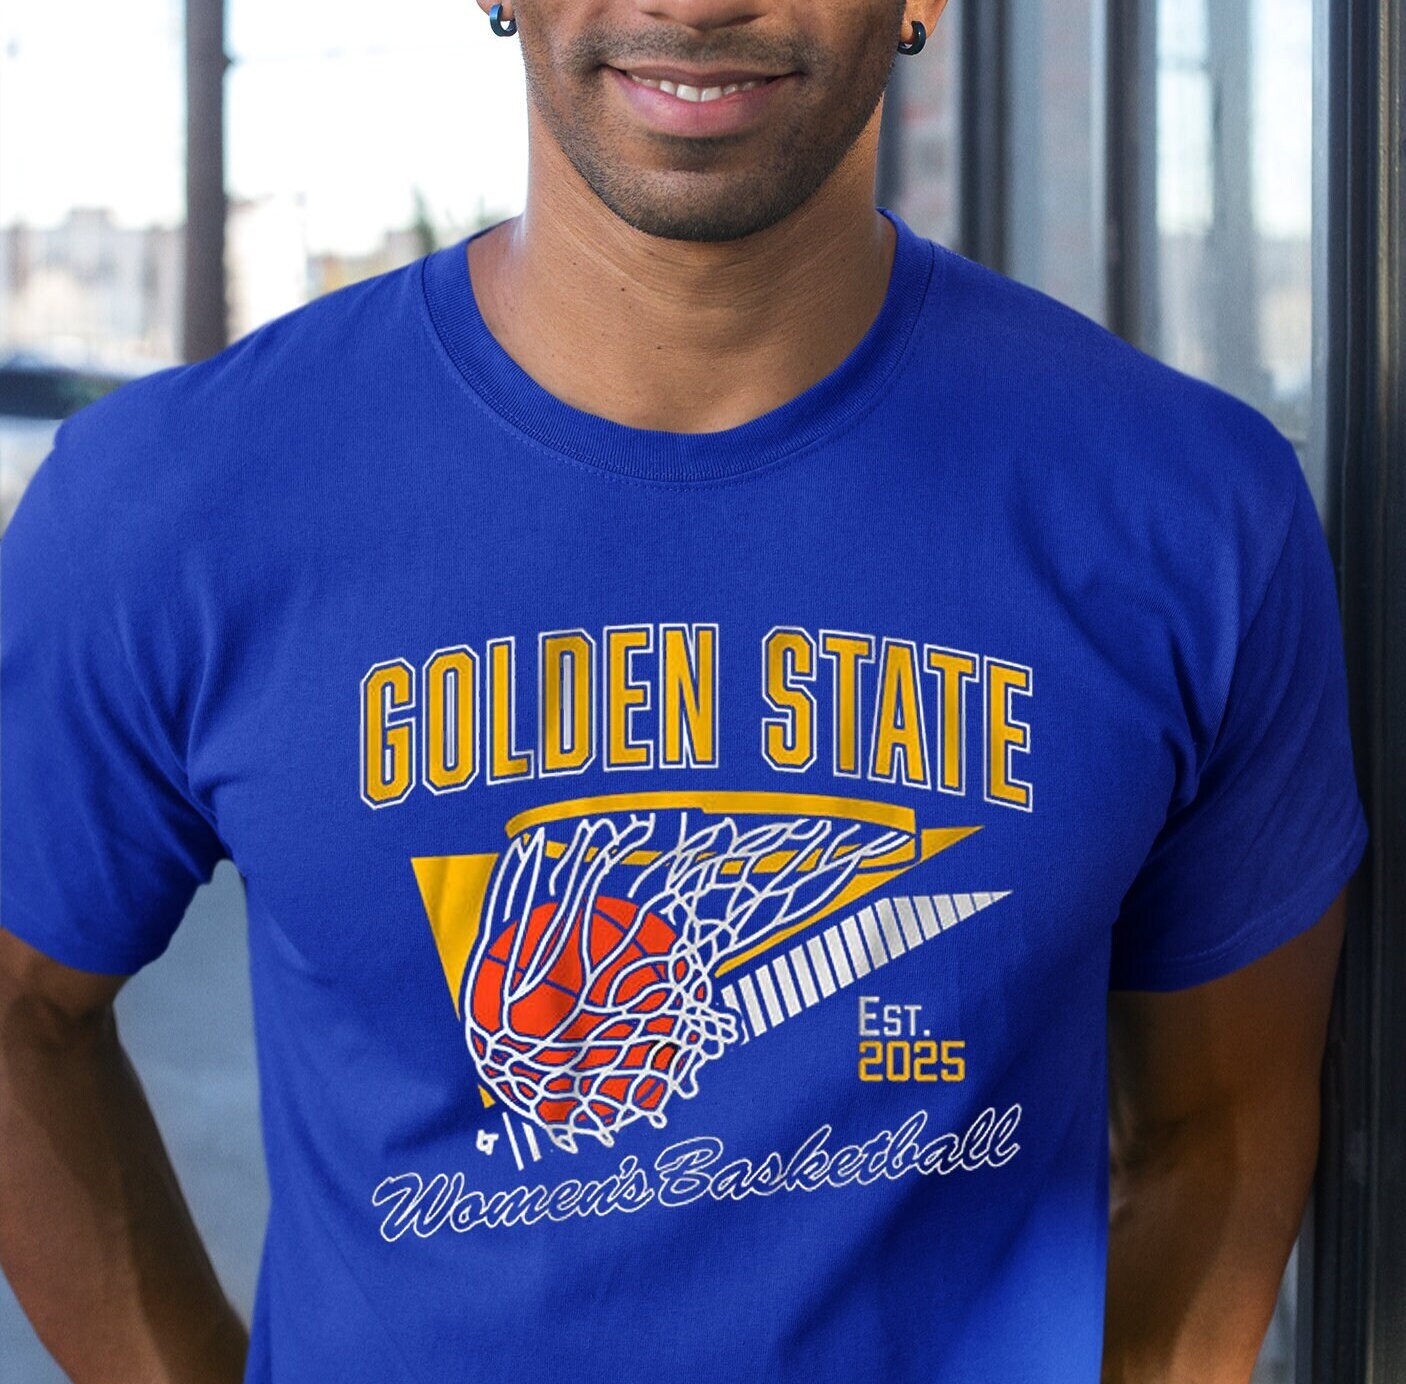 Golden State Women's Basketball 2025 Shirt